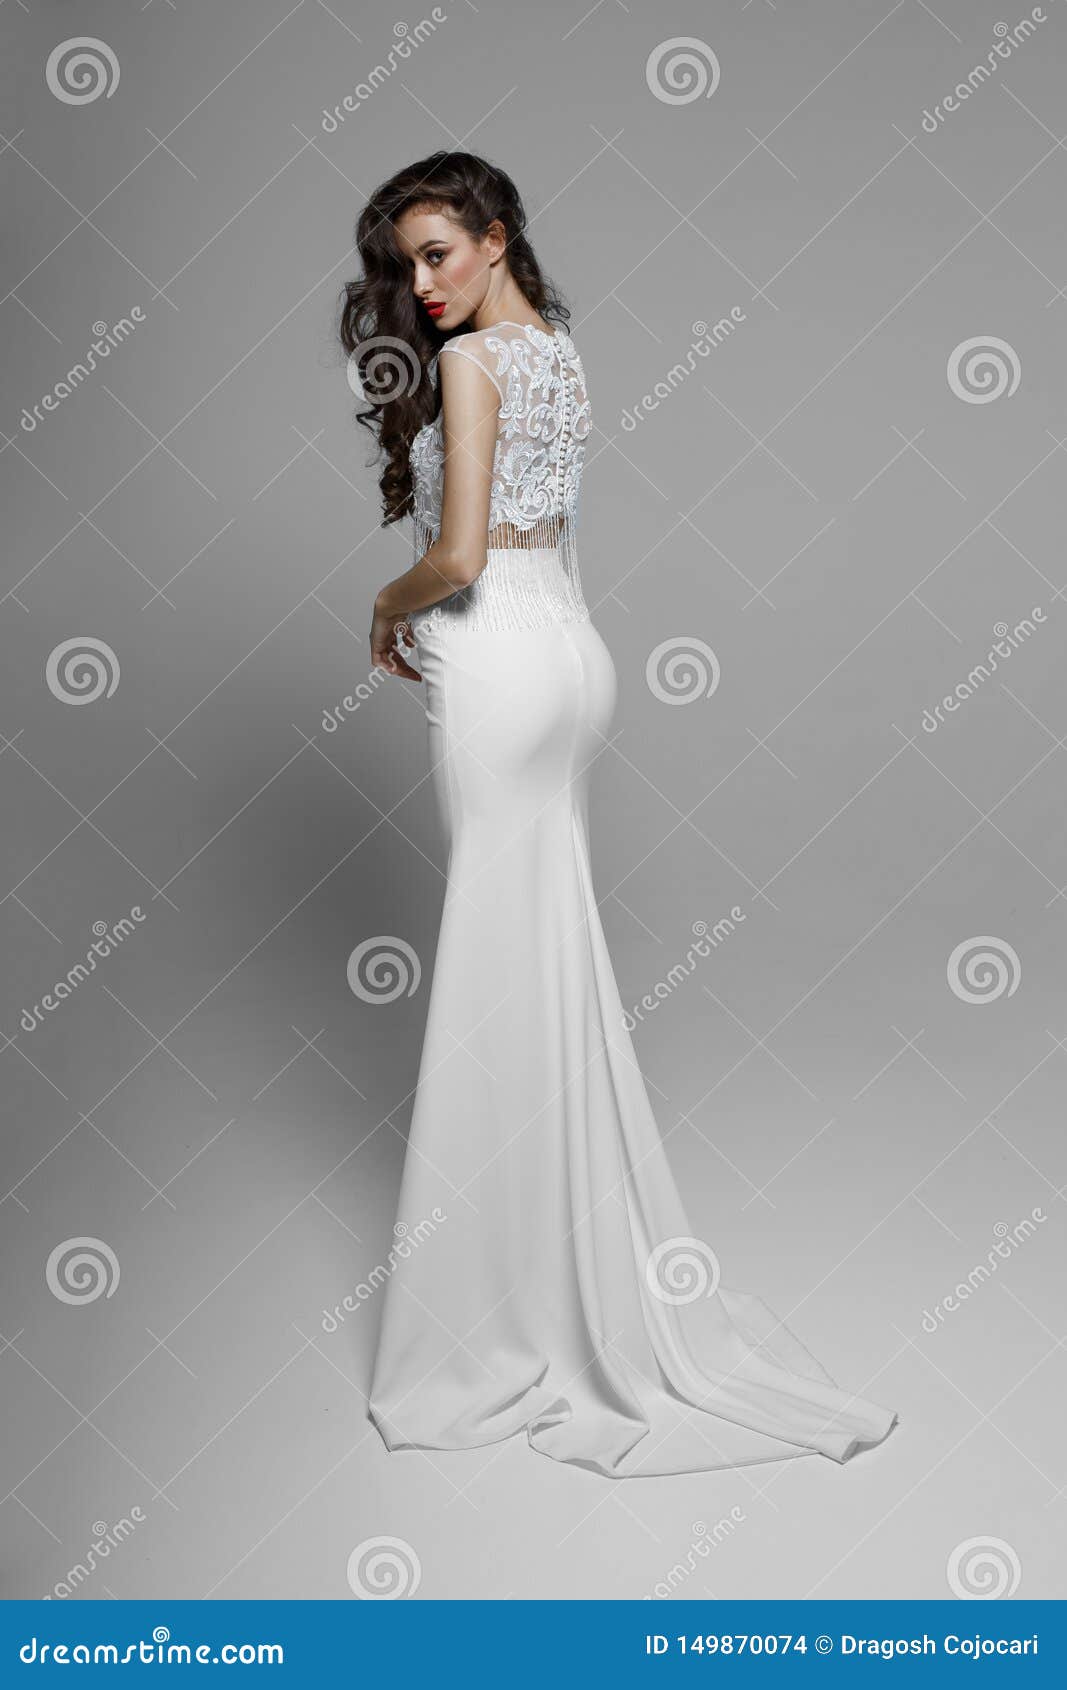 splendid white dress